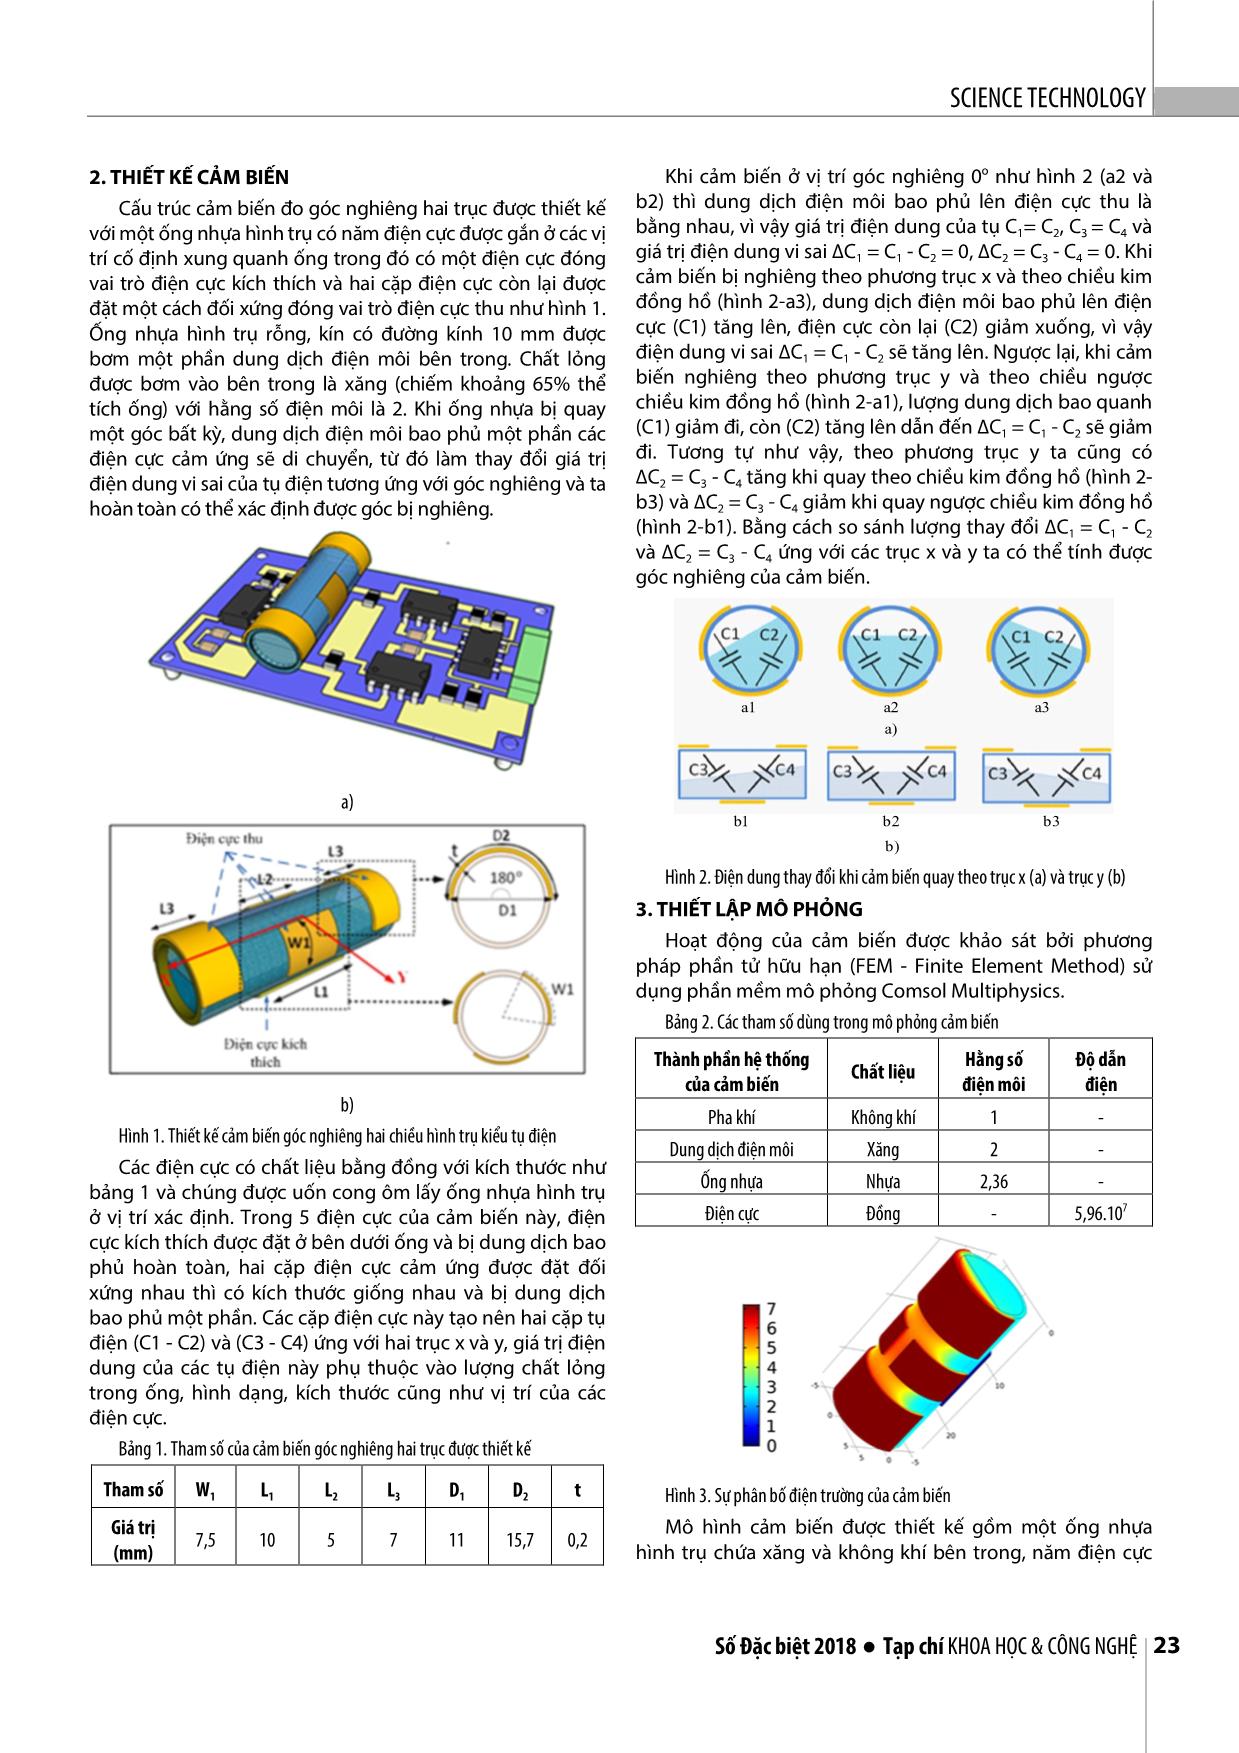 Thiết kế, mô phỏng cảm biến hình trụ kiểu tụ điện đo góc nghiêng hai chiều trang 2